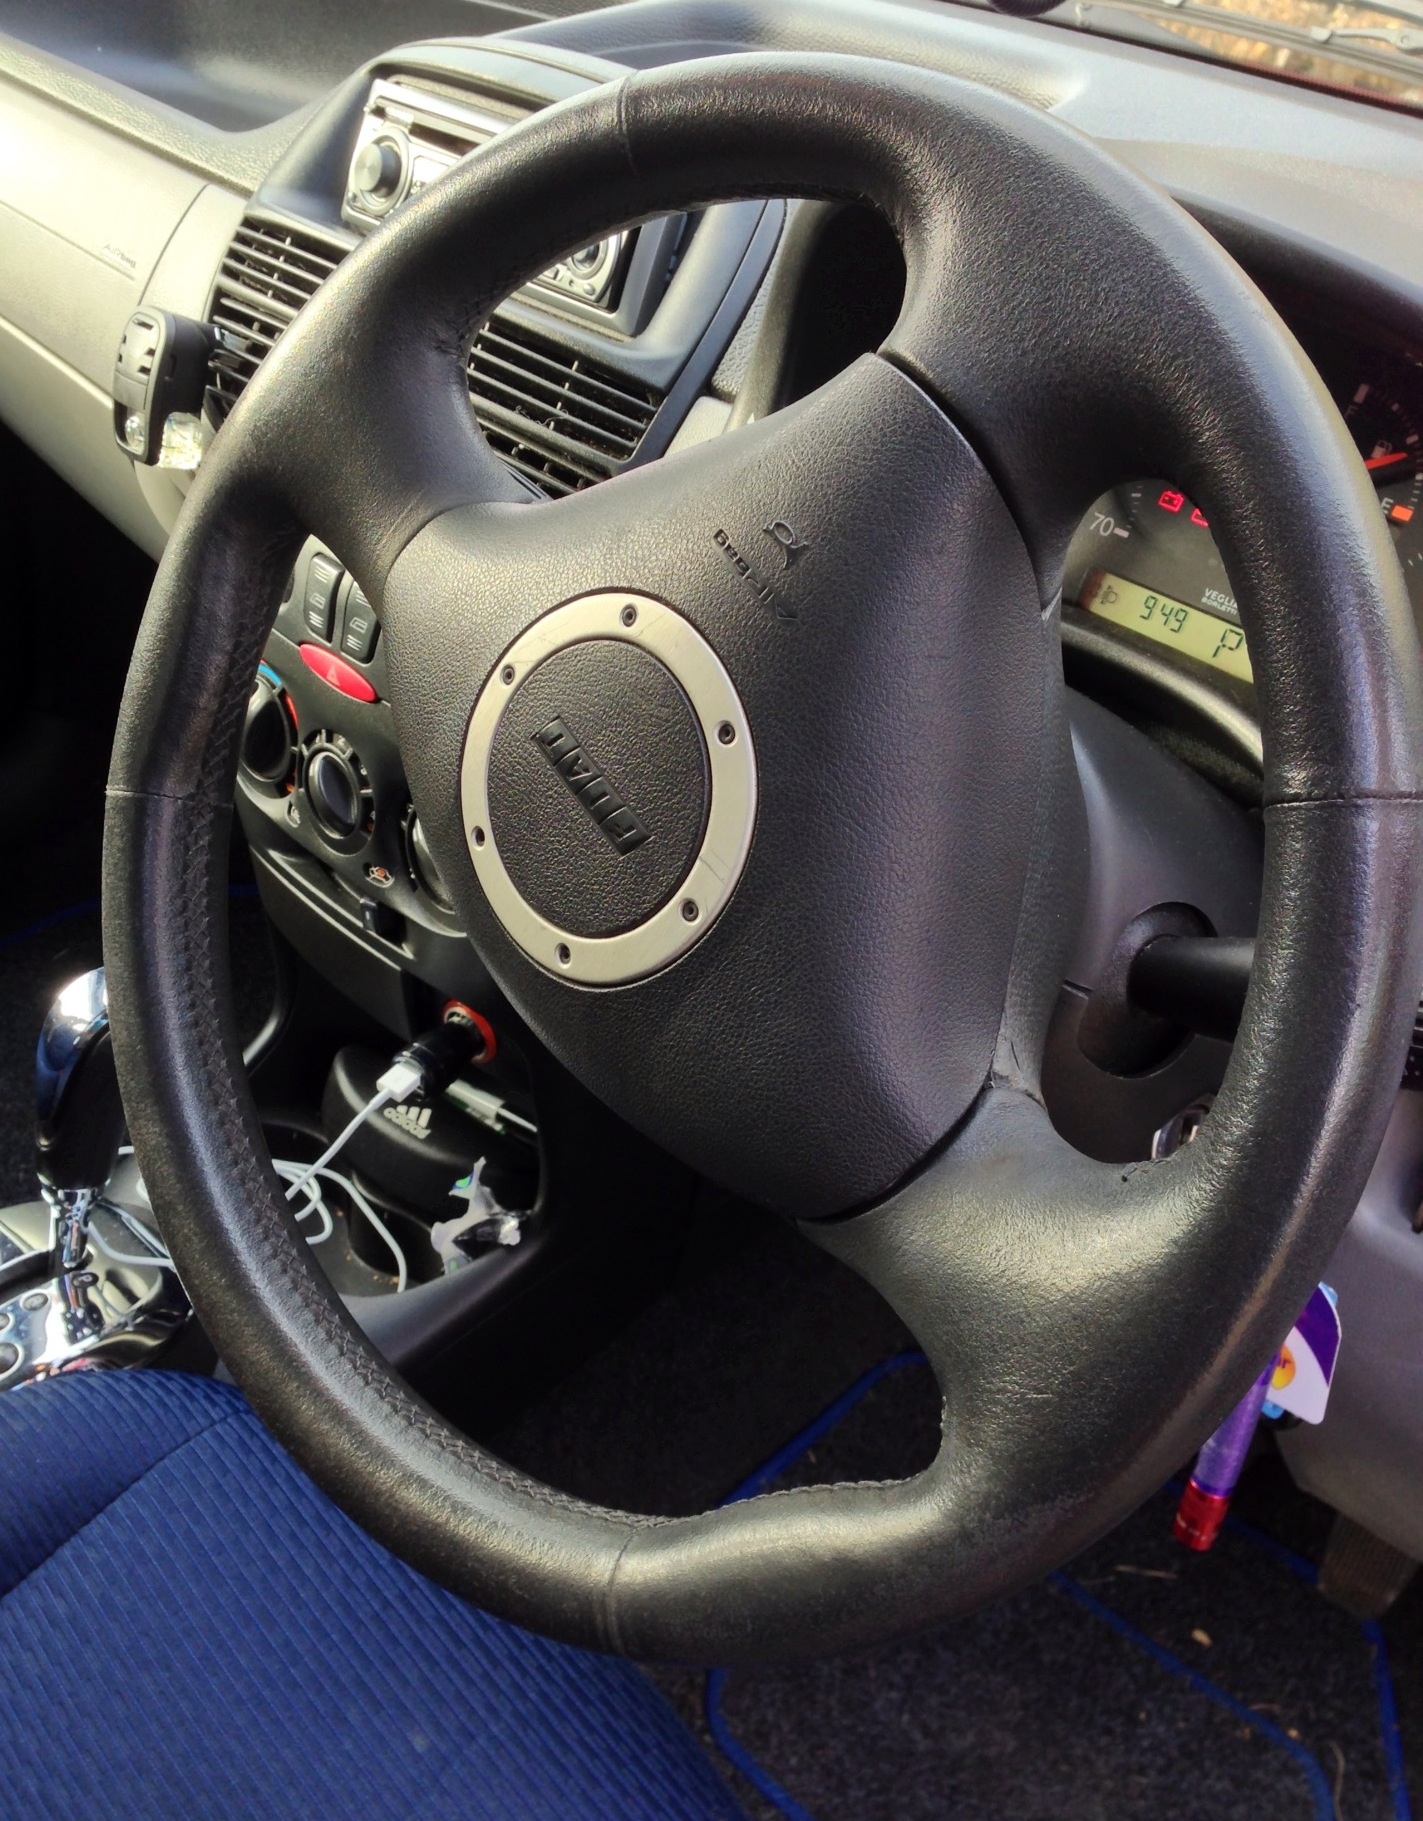 Sporting steering wheel.